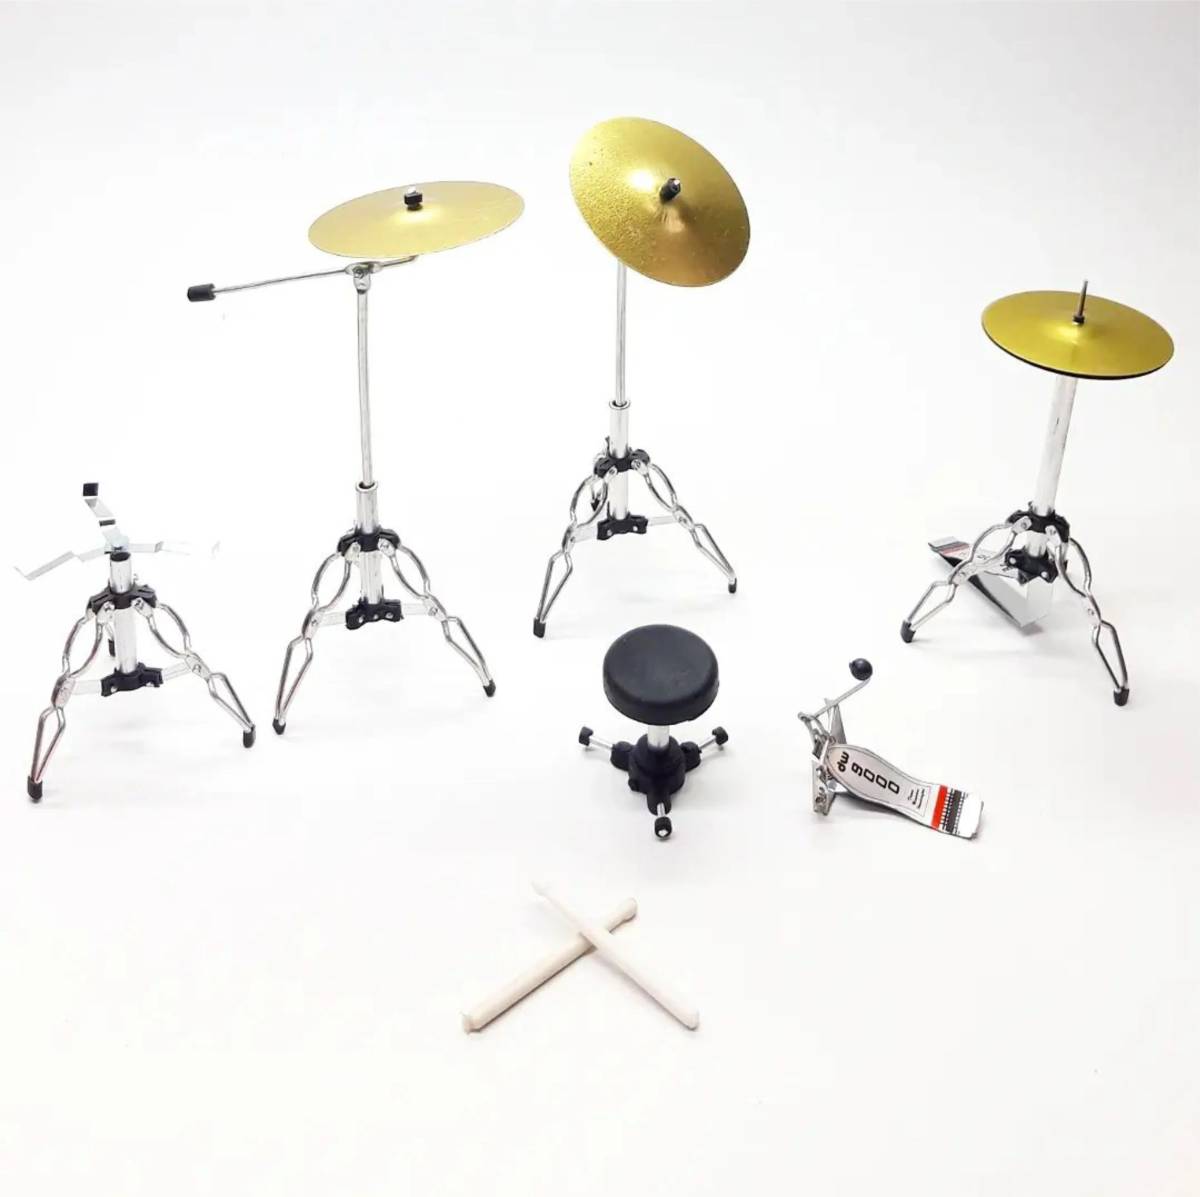 The Beatles Beatles миниатюра барабан комплект Mini музыкальные инструменты 